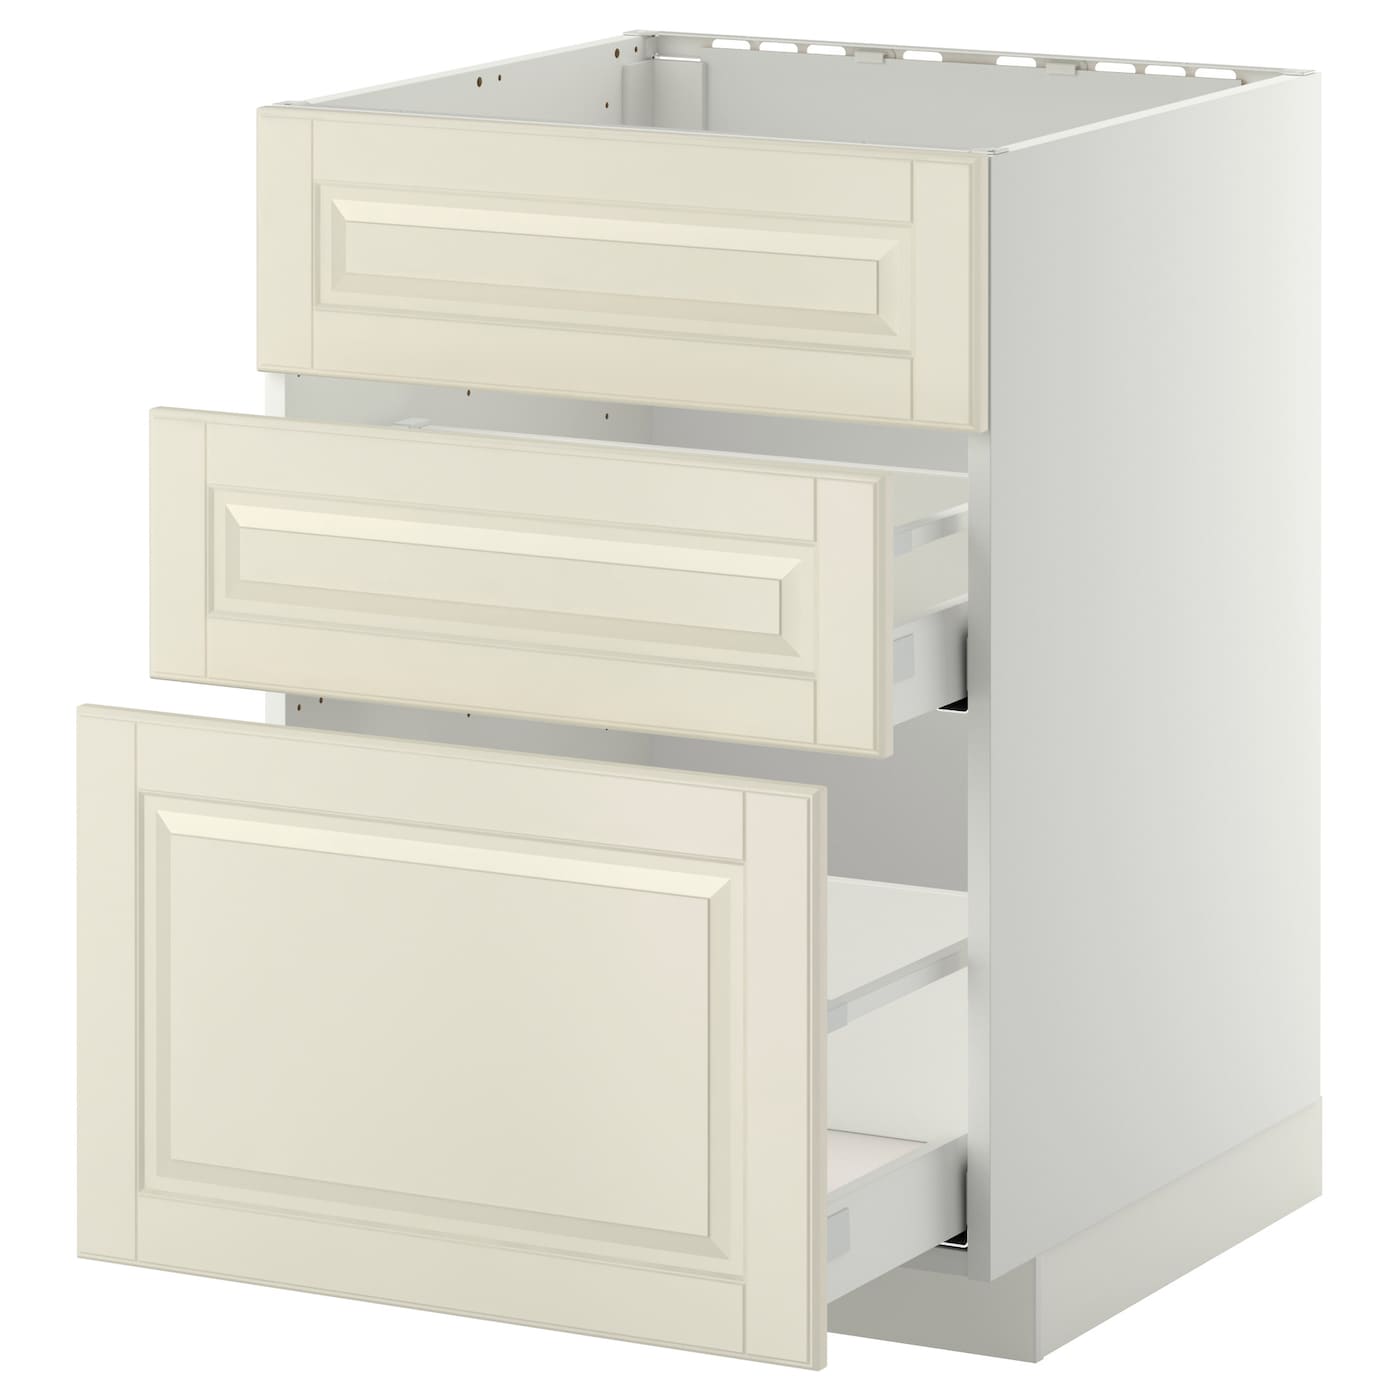 Напольный кухонный шкаф  - IKEA METOD MAXIMERA, 88x61,9x60см, белый, МЕТОД МАКСИМЕРА ИКЕА